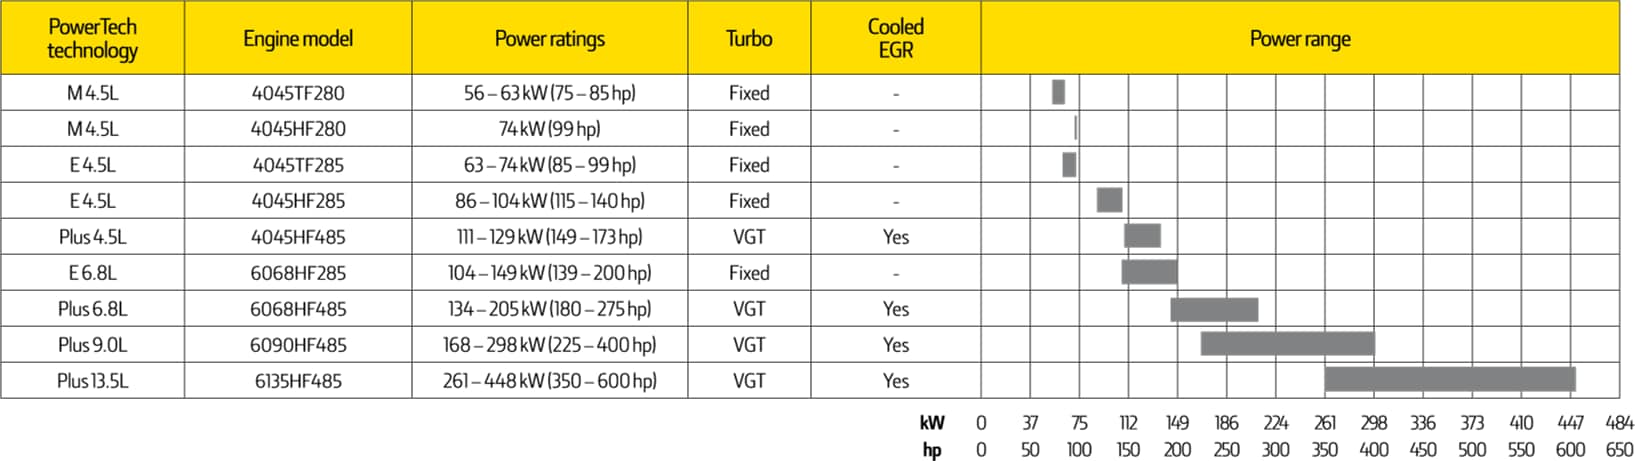 Tabela de motores para Tier 3